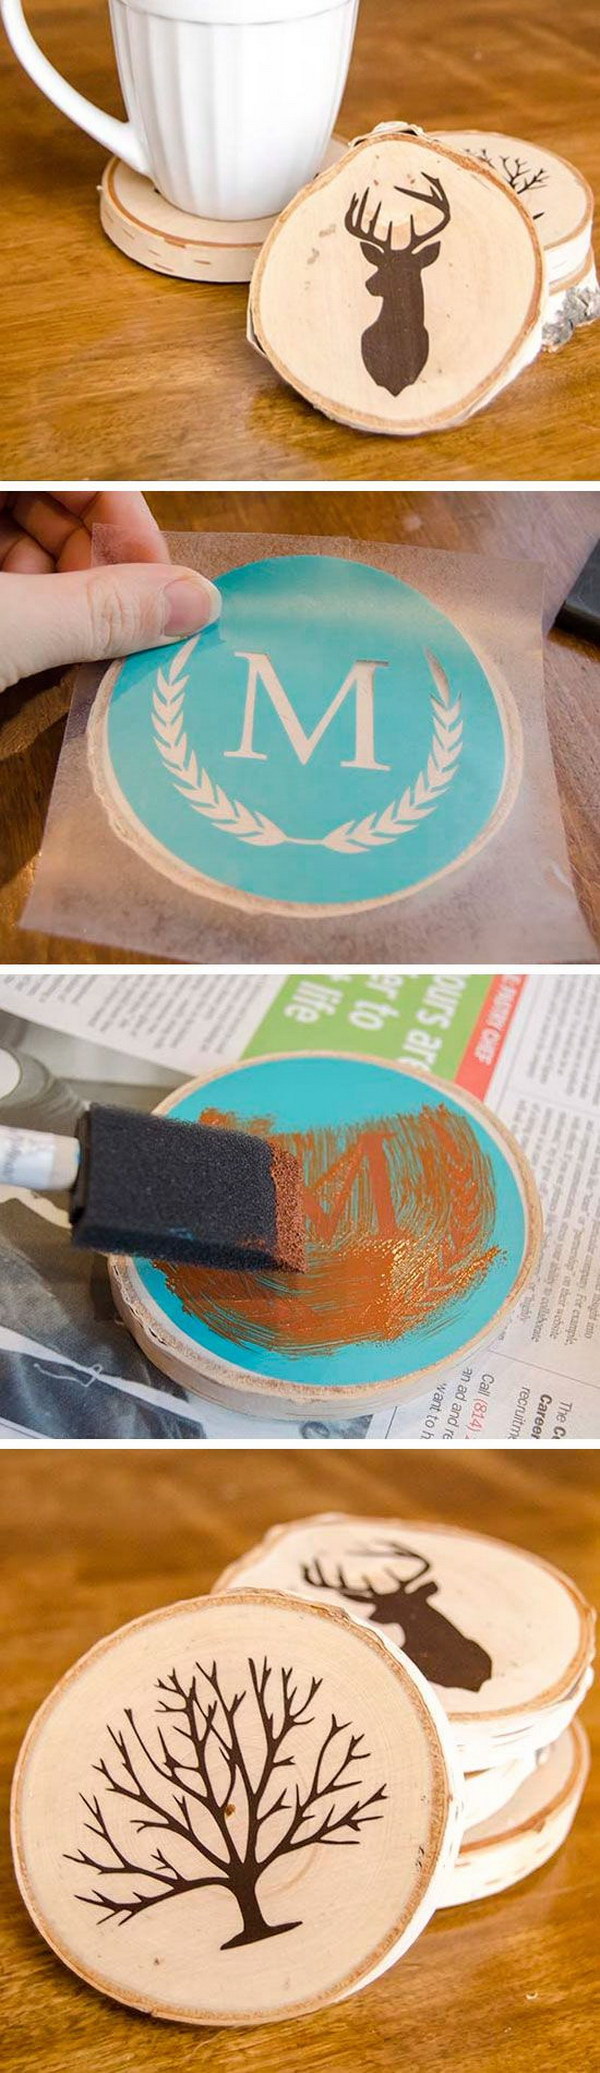 DIY Painted Wood Slice Coasters. 